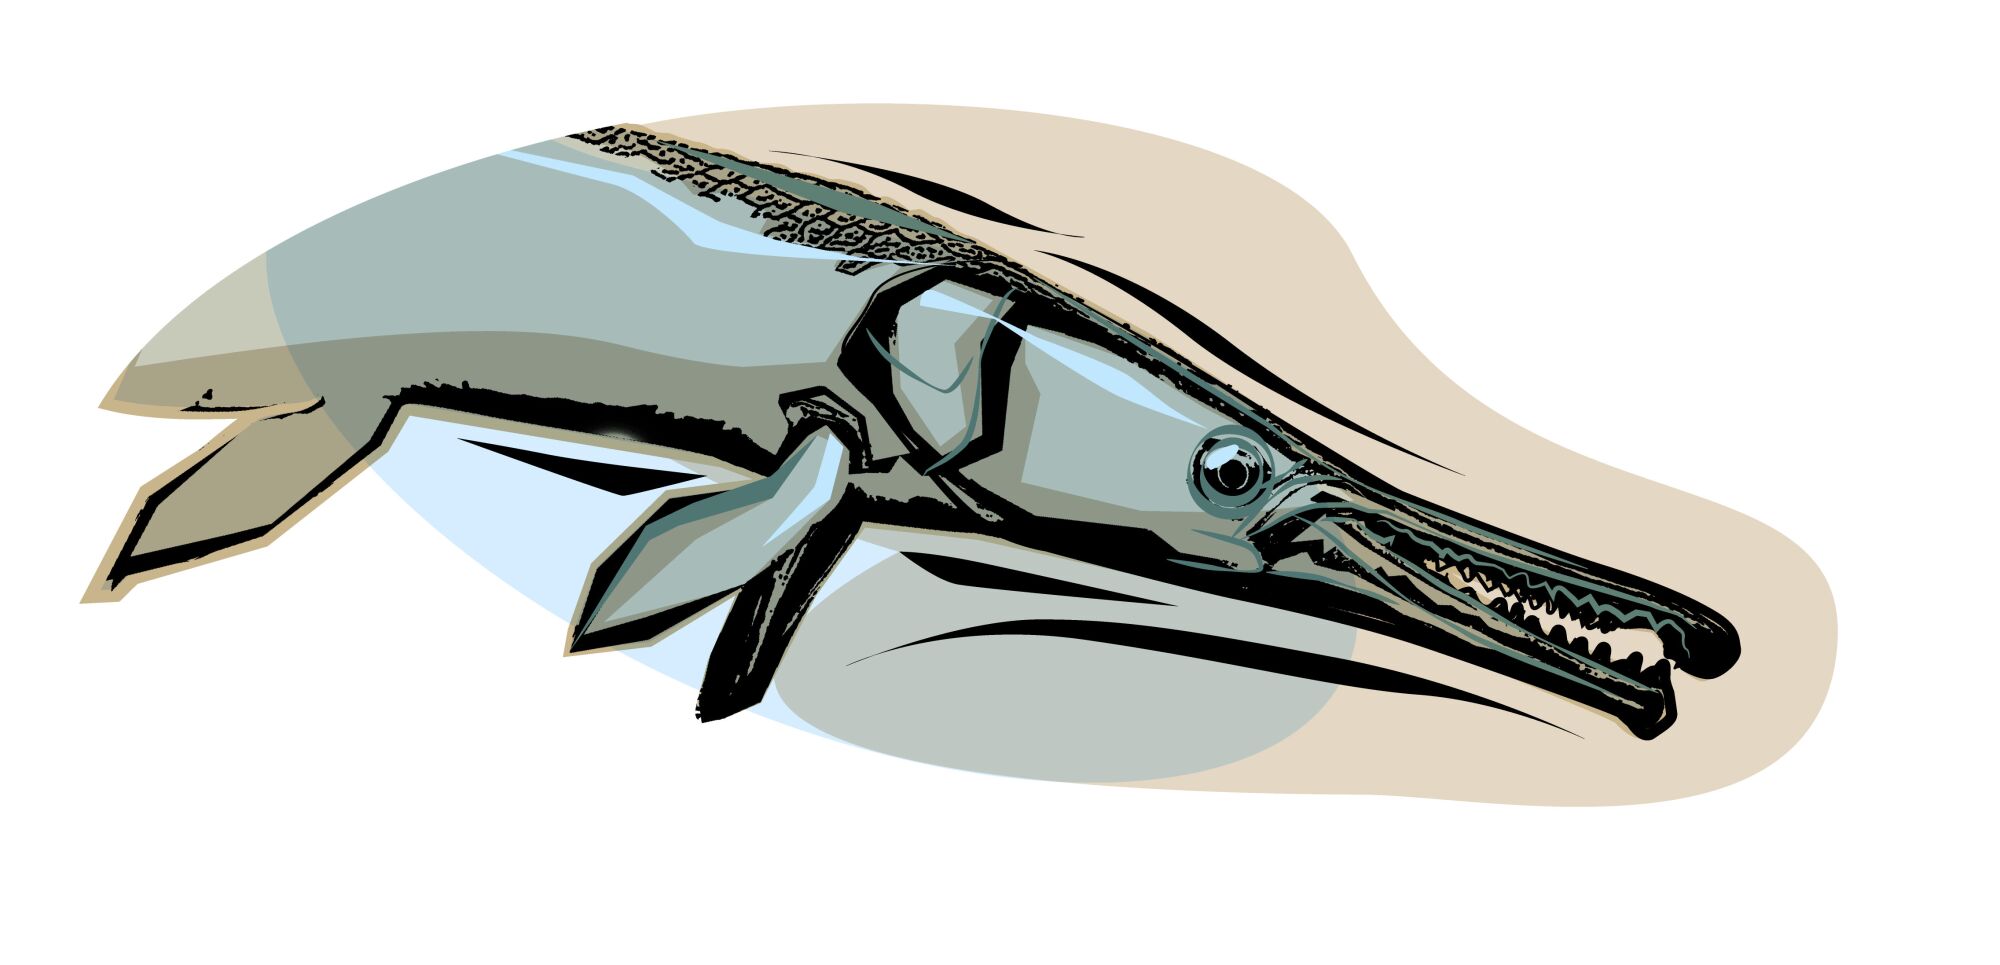 Illustration of a gar fish